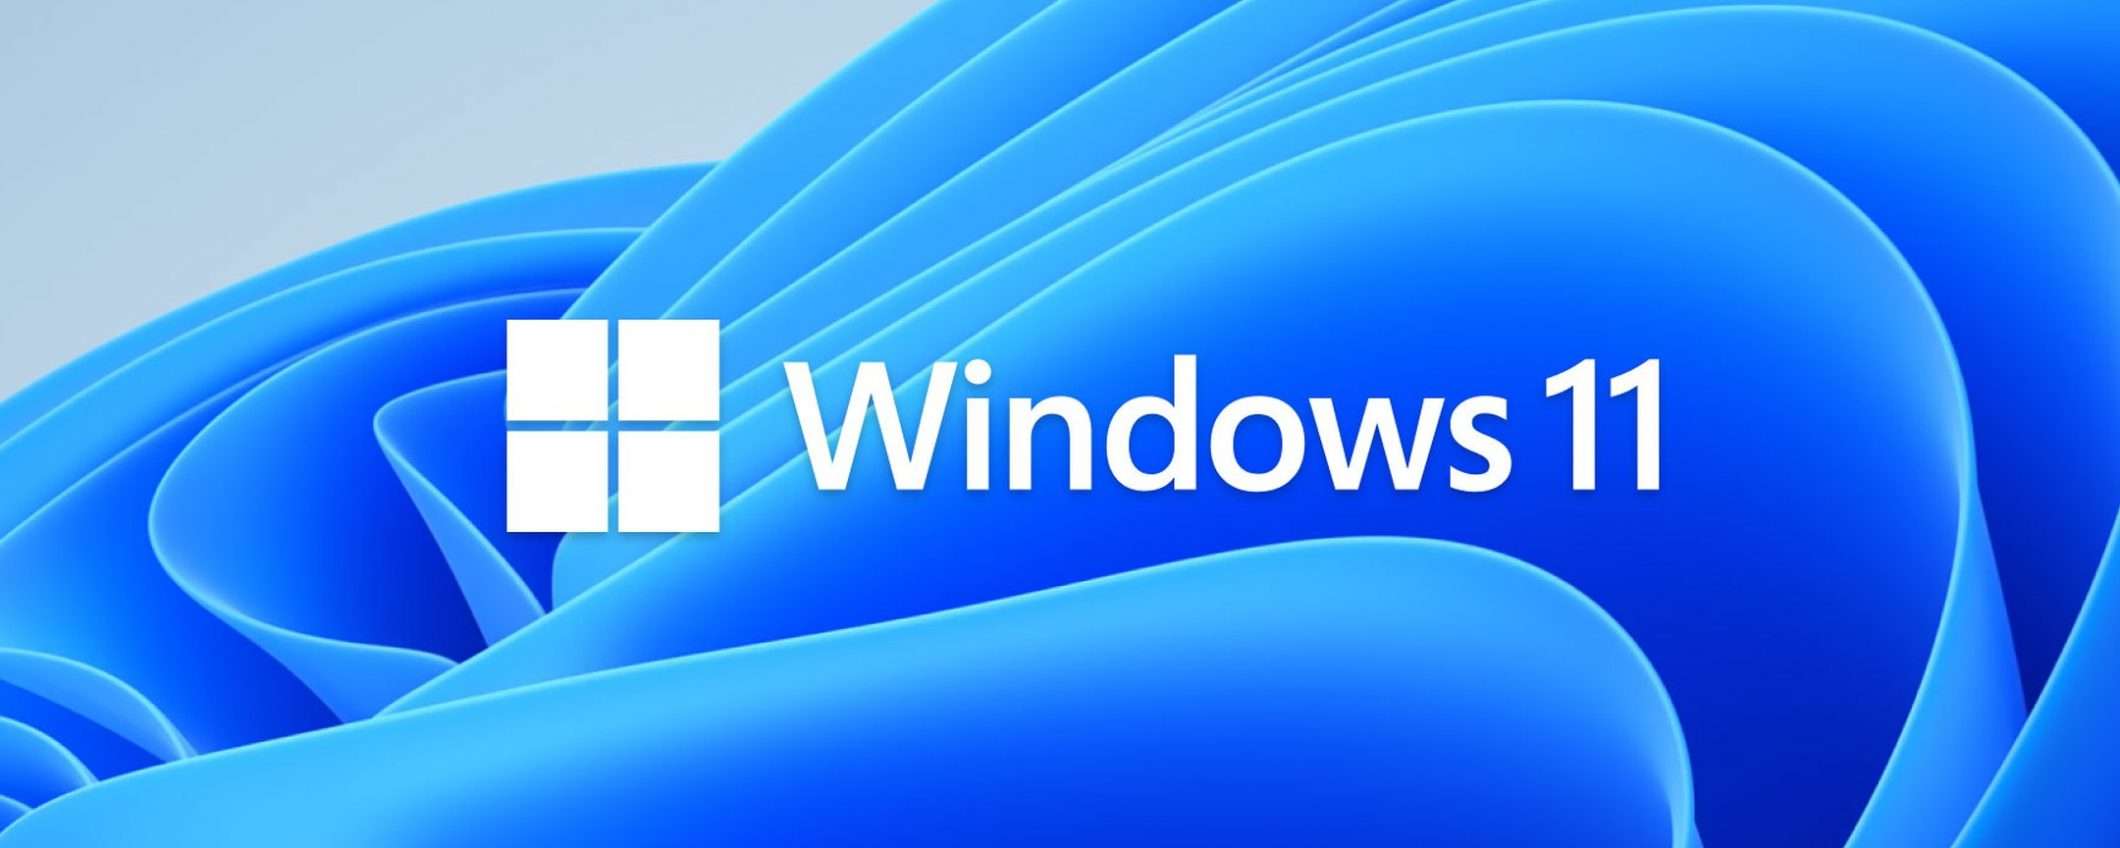 Windows 11: aggiornamento negato ai vecchi Surface